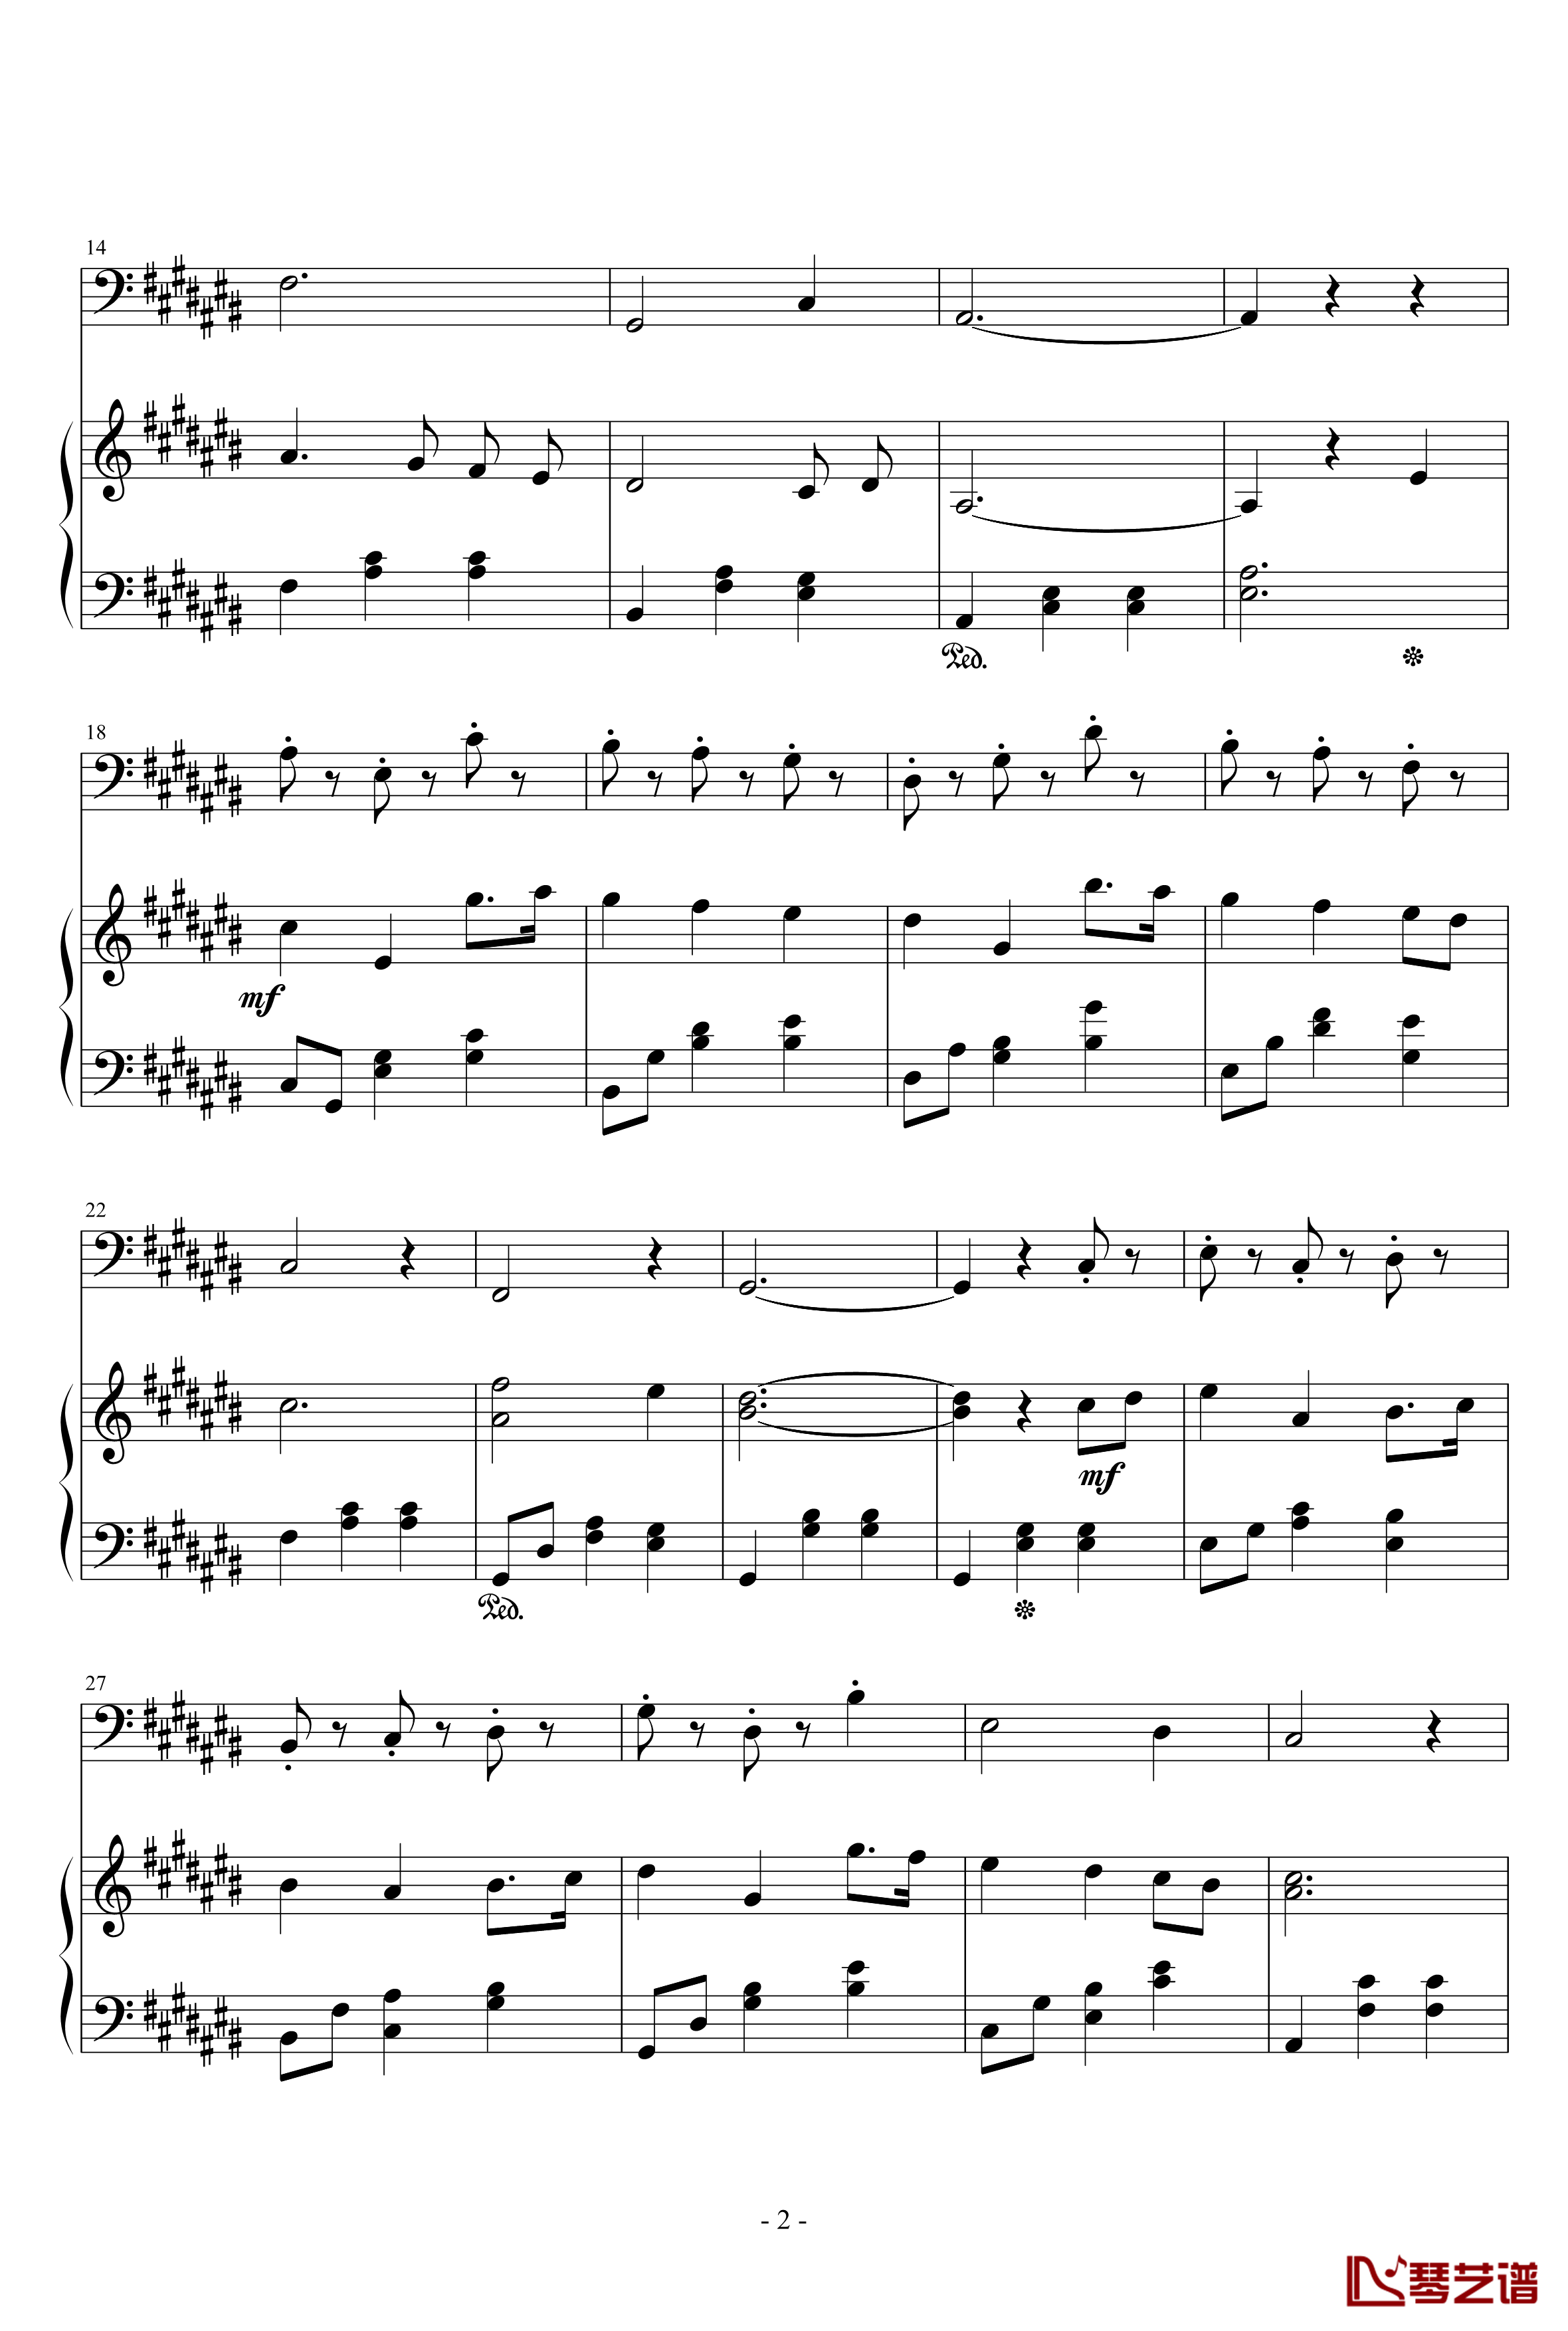 弦乐协奏曲A钢琴谱-天籁传声2